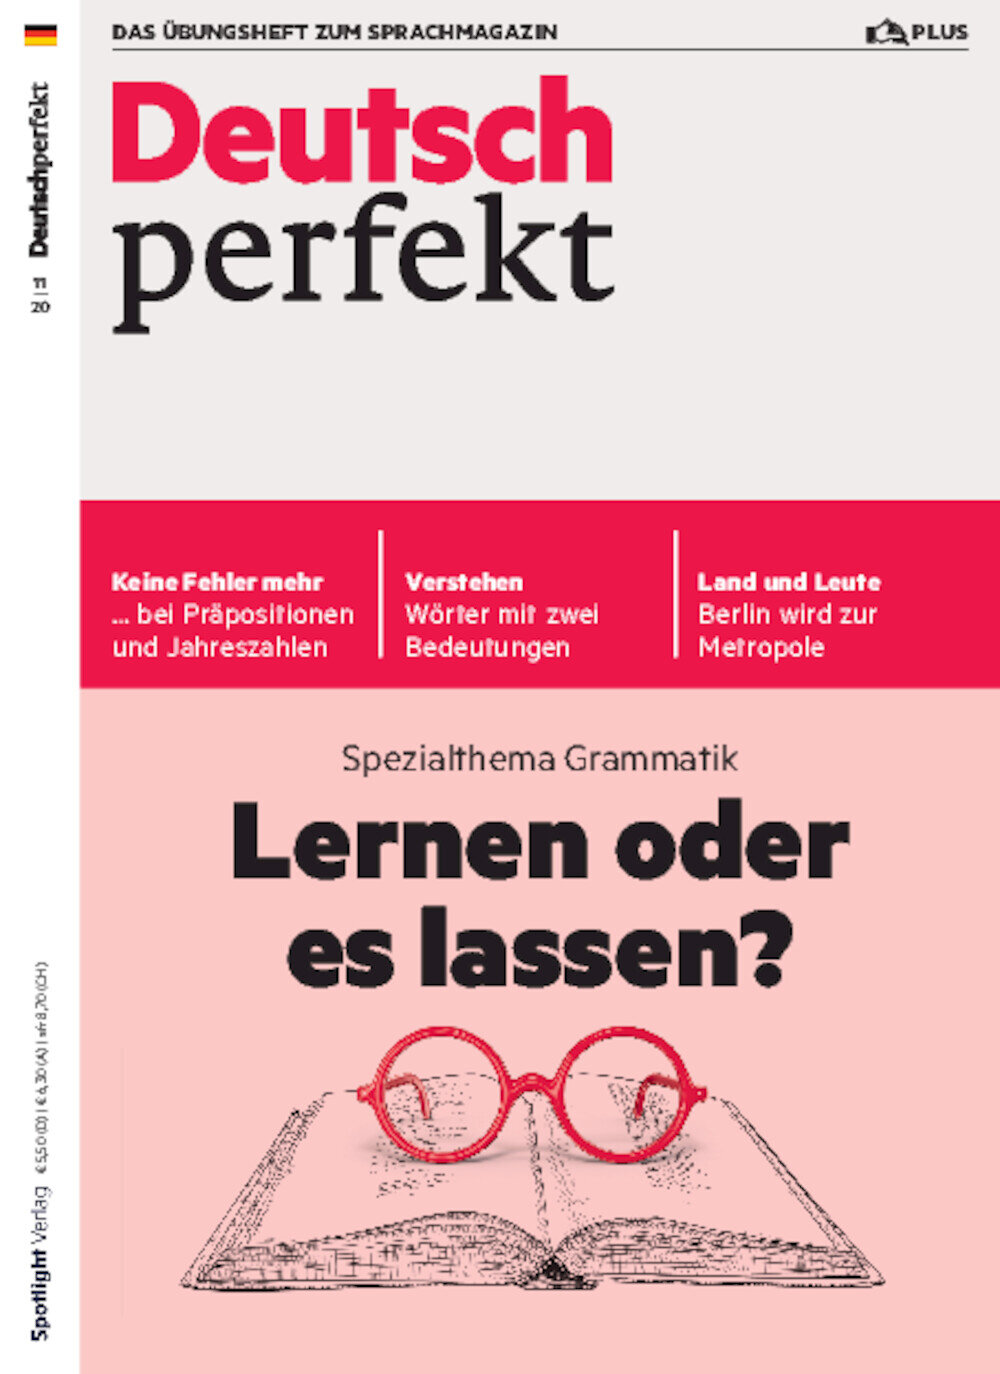 Deutsch perfekt PLUS 11/2020